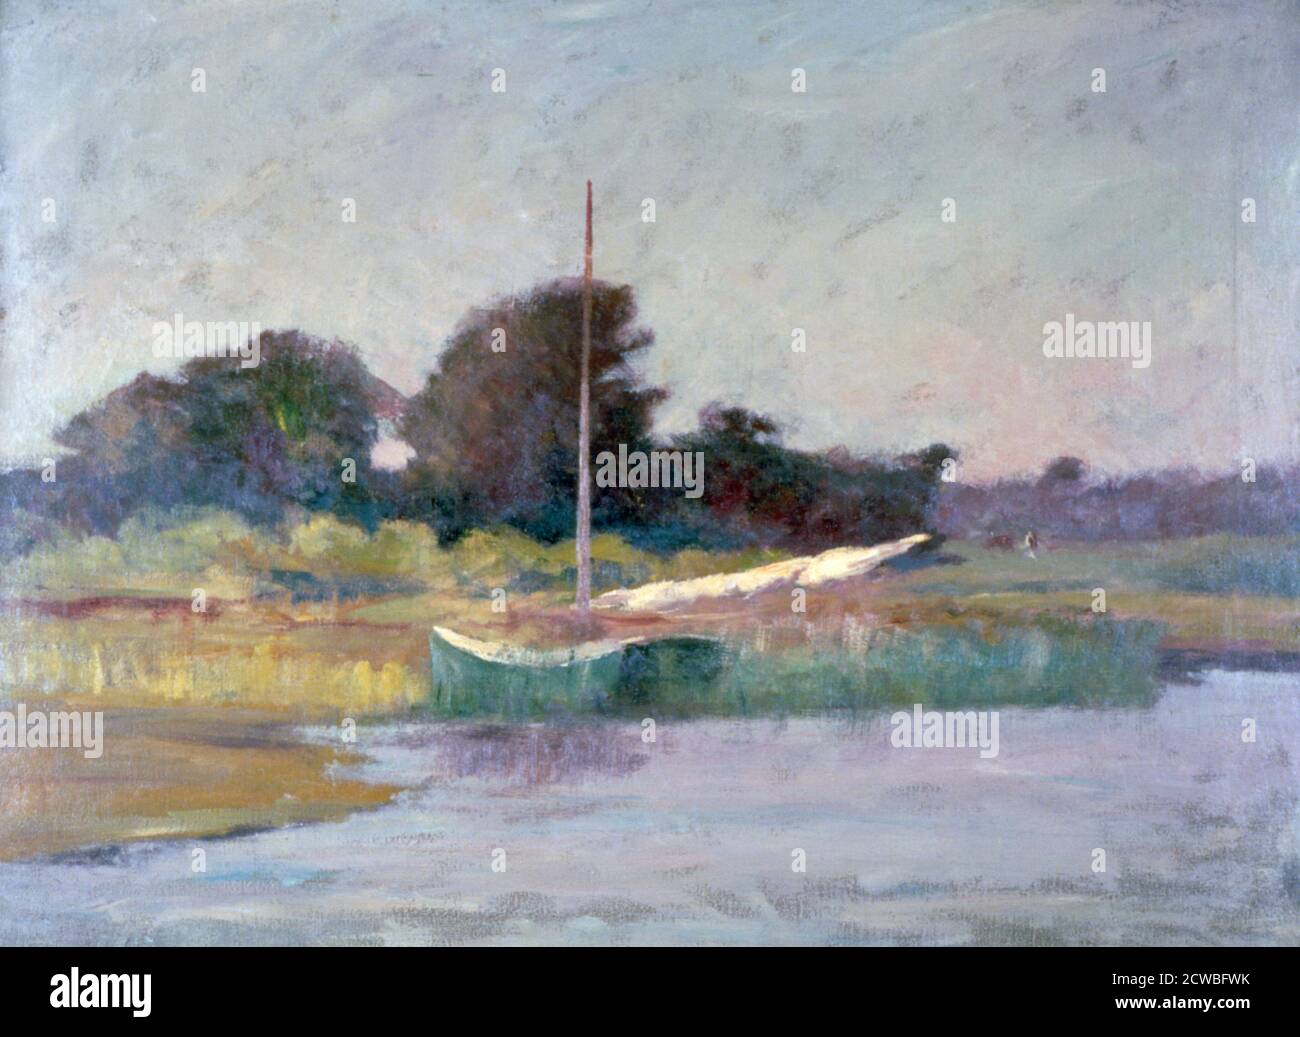 Lone Boat', C1868-1917. Künstler: Walter Clark. Walter Clark (1848-1917) war ein amerikanischer Landschaftskünstler. Stockfoto